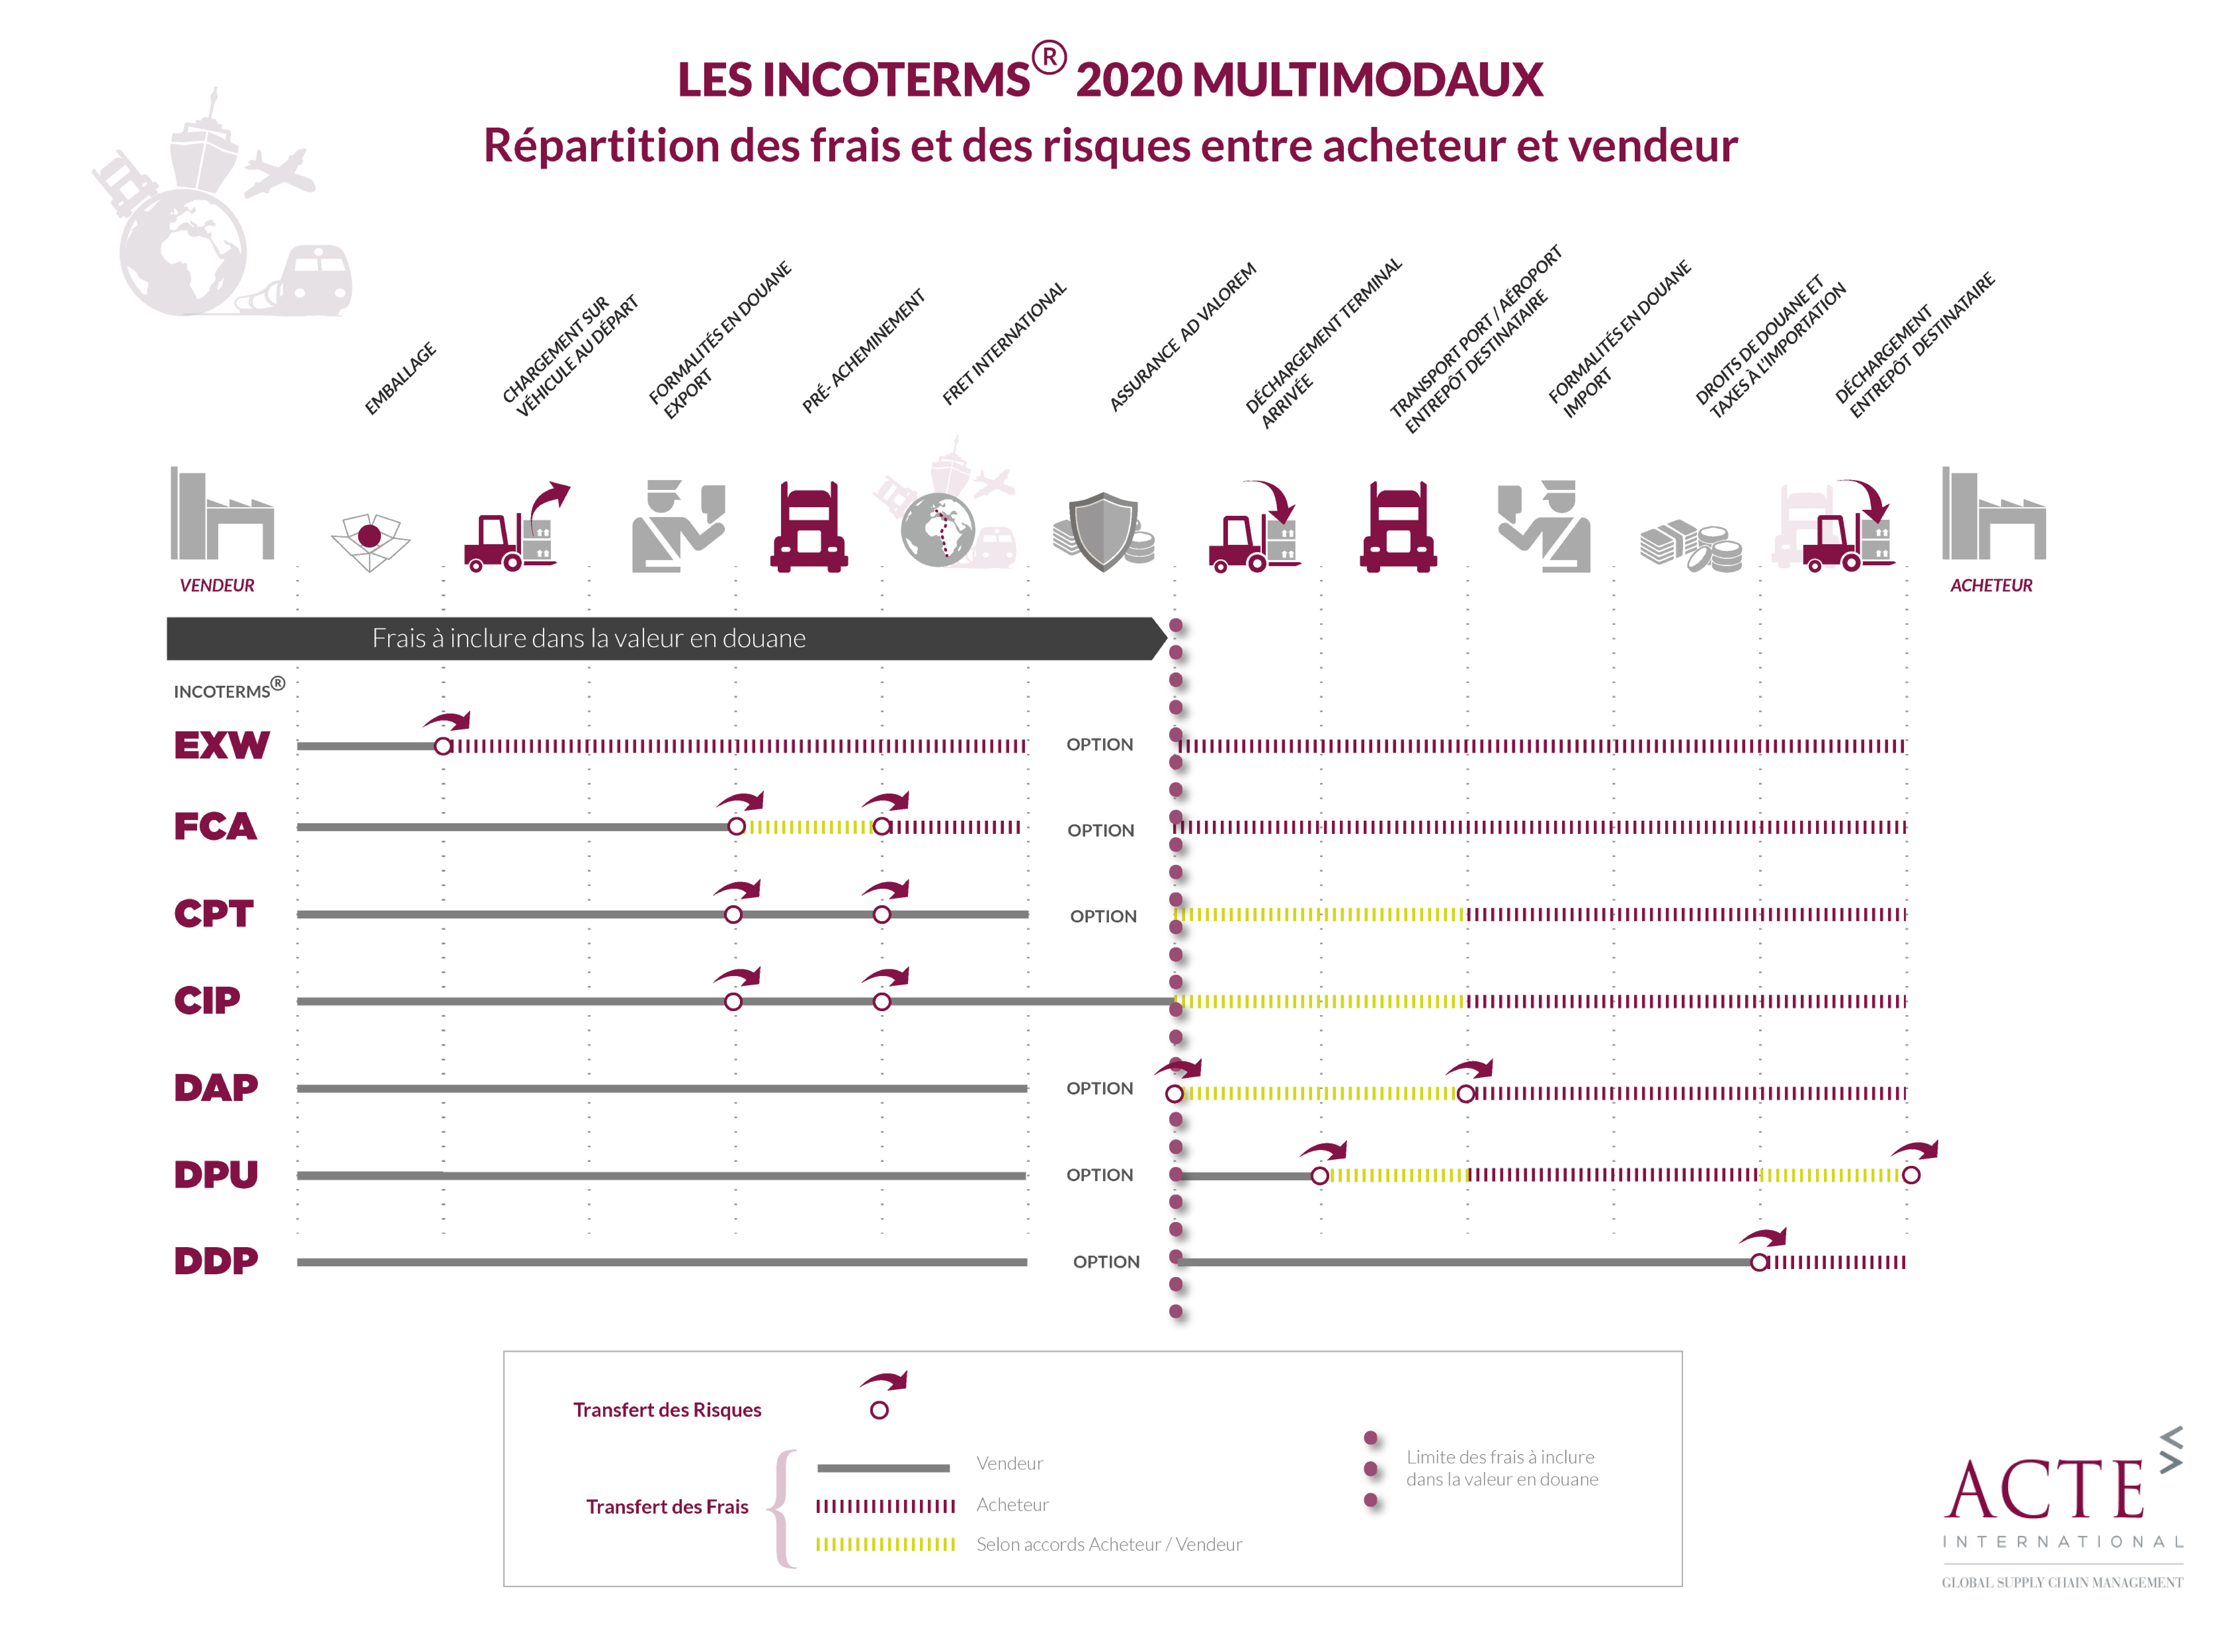 Les Incoterms 2020 multimodaux - Répartition des frais et des risques entre acheteurs et vendeurs (infographie)